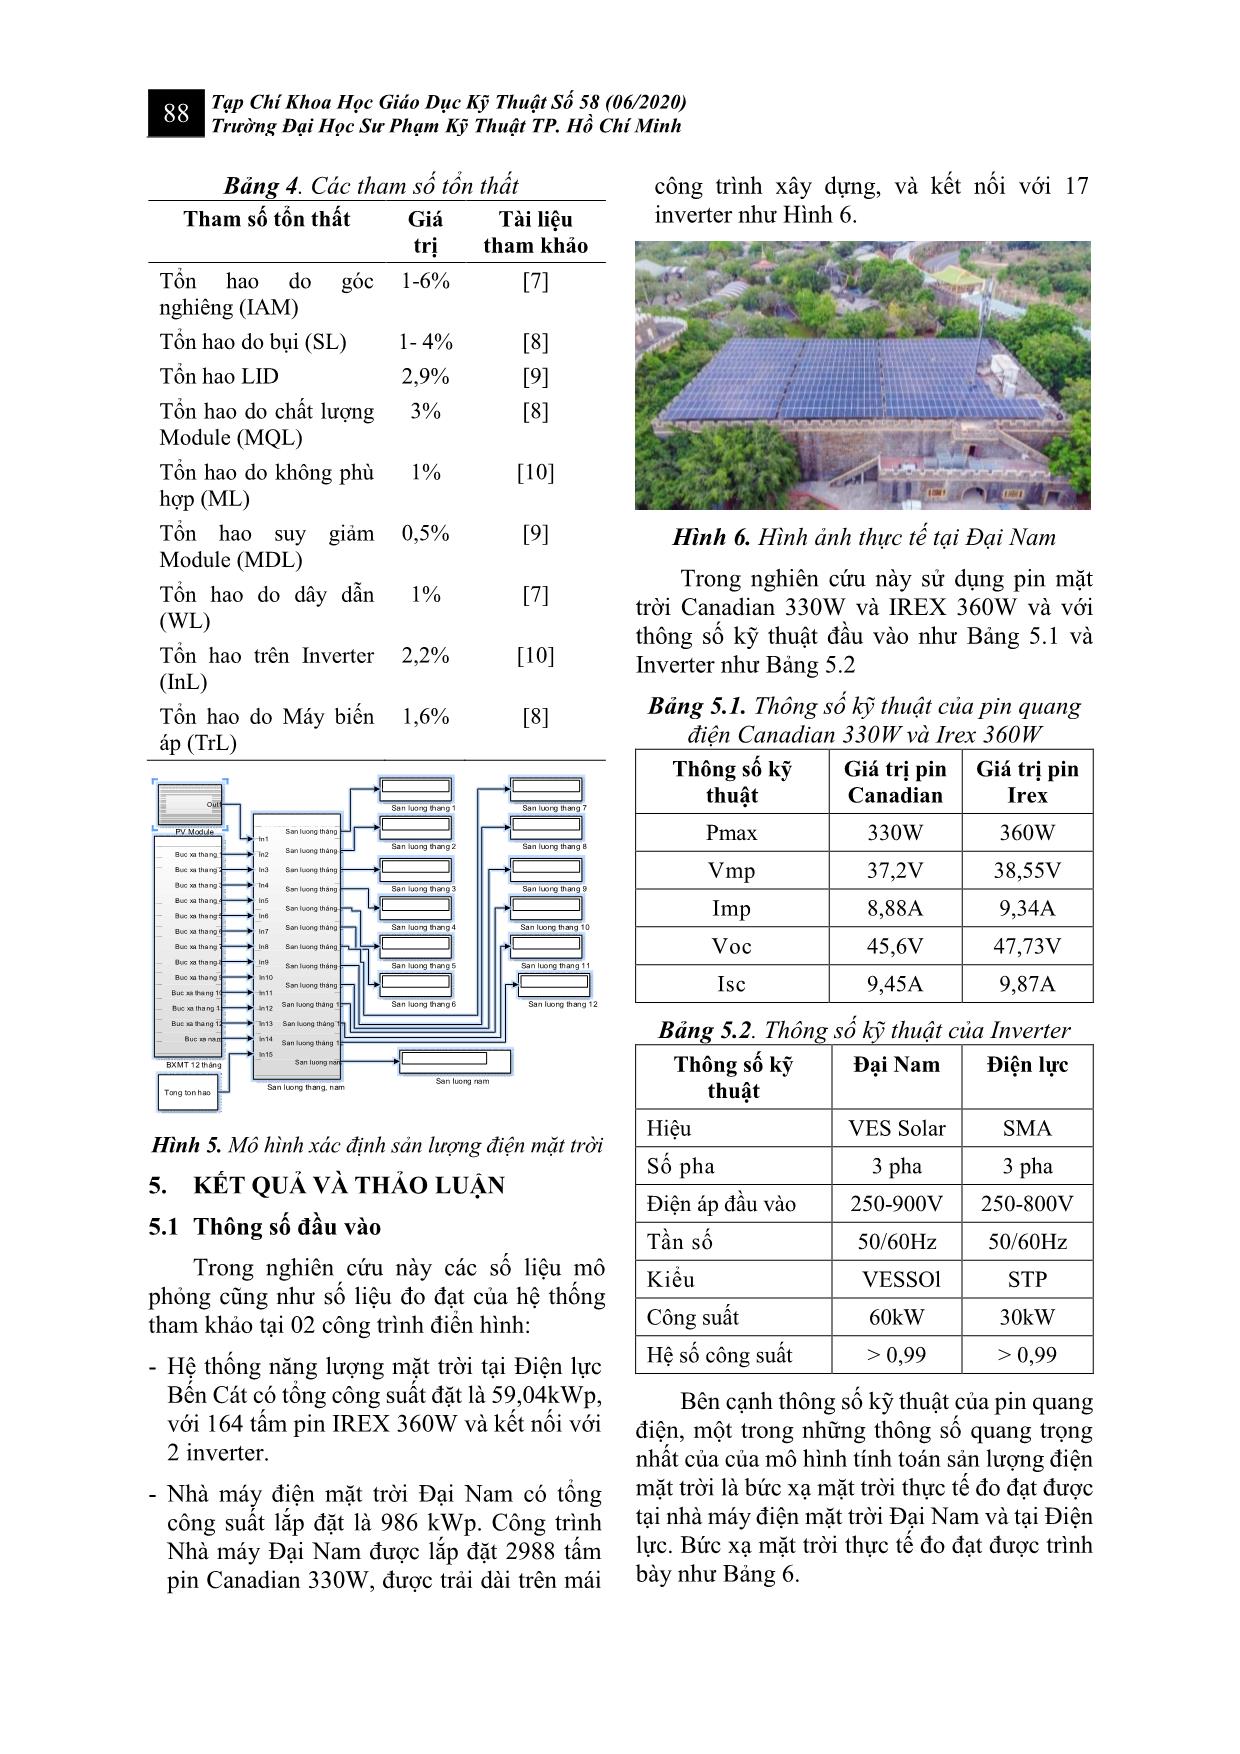 Xây dựng mô hình xác định sản lượng điện mặt trời trên mái nối lưới dựa trên môi trường Matlab/Simulink trang 5